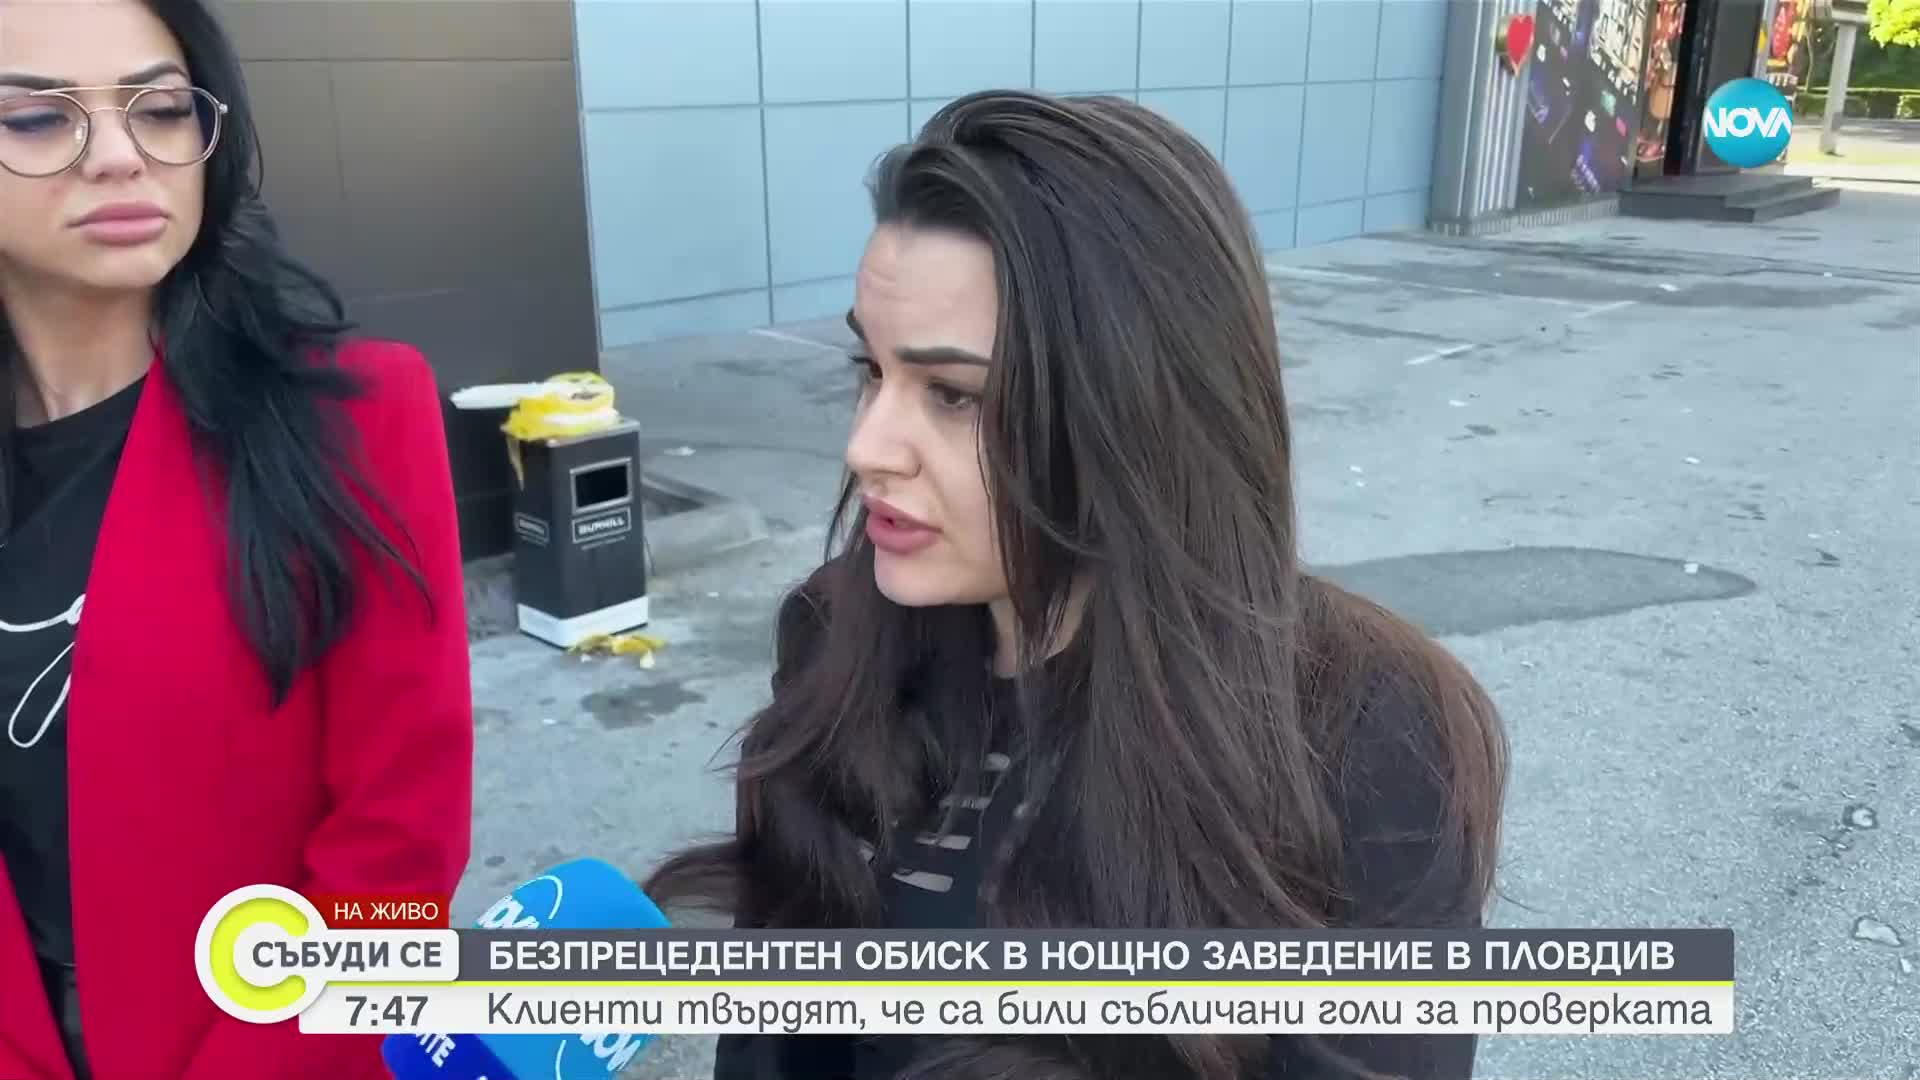 СЪБЛЕЧЕНИ ЧИСТО ГОЛИ? Клиенти на заведение се оплакаха от полицията в Пловдив